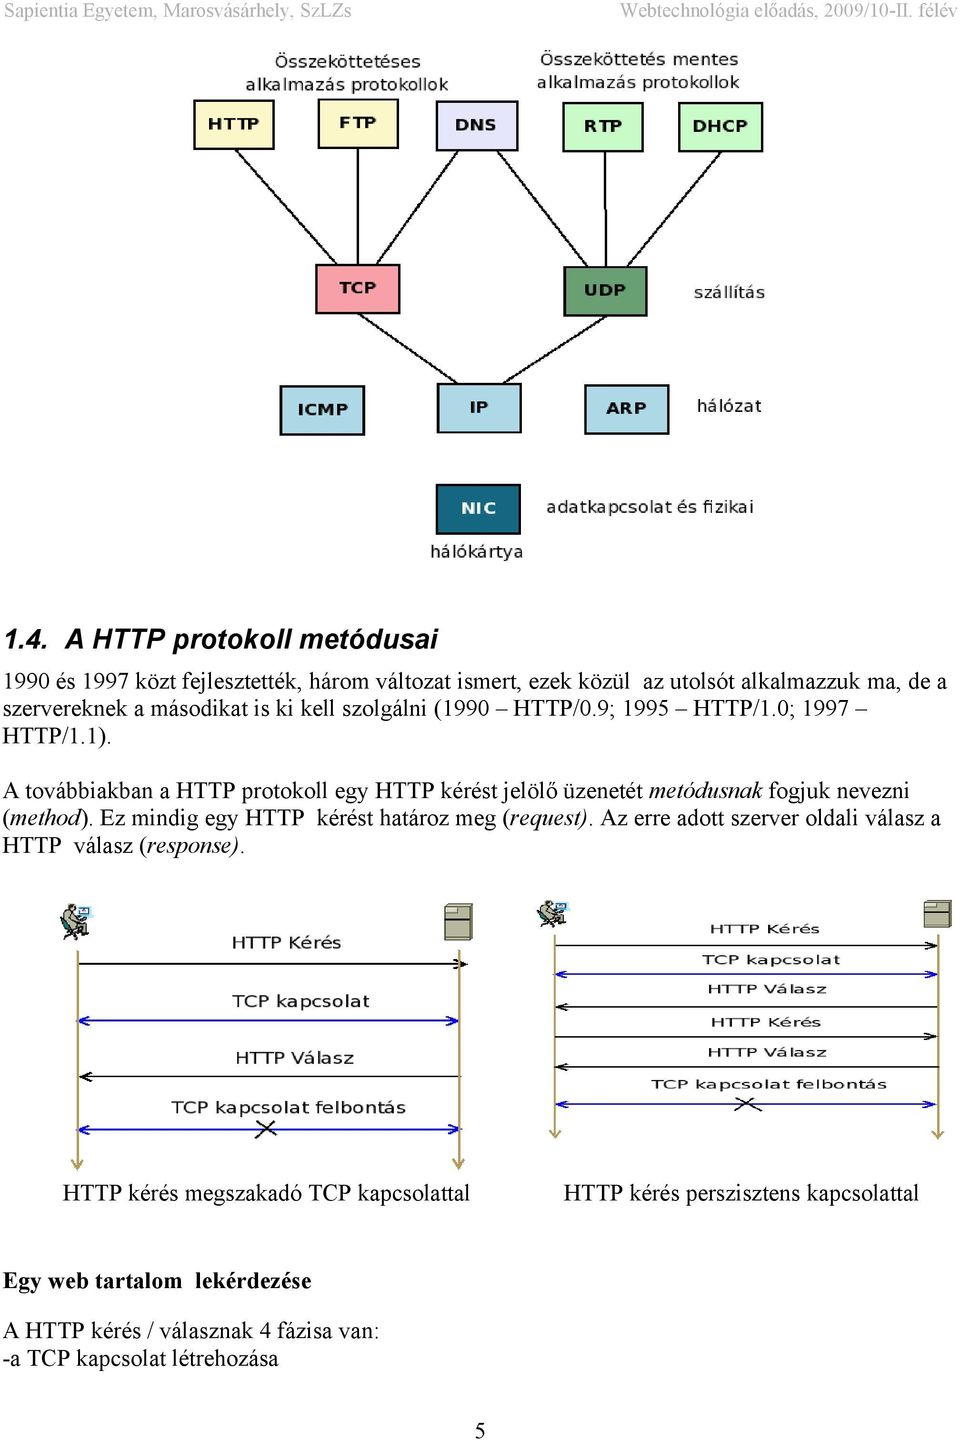 A továbbiakban a HTTP protokoll egy HTTP kérést jelölő üzenetét metódusnak fogjuk nevezni (method). Ez mindig egy HTTP kérést határoz meg (request).